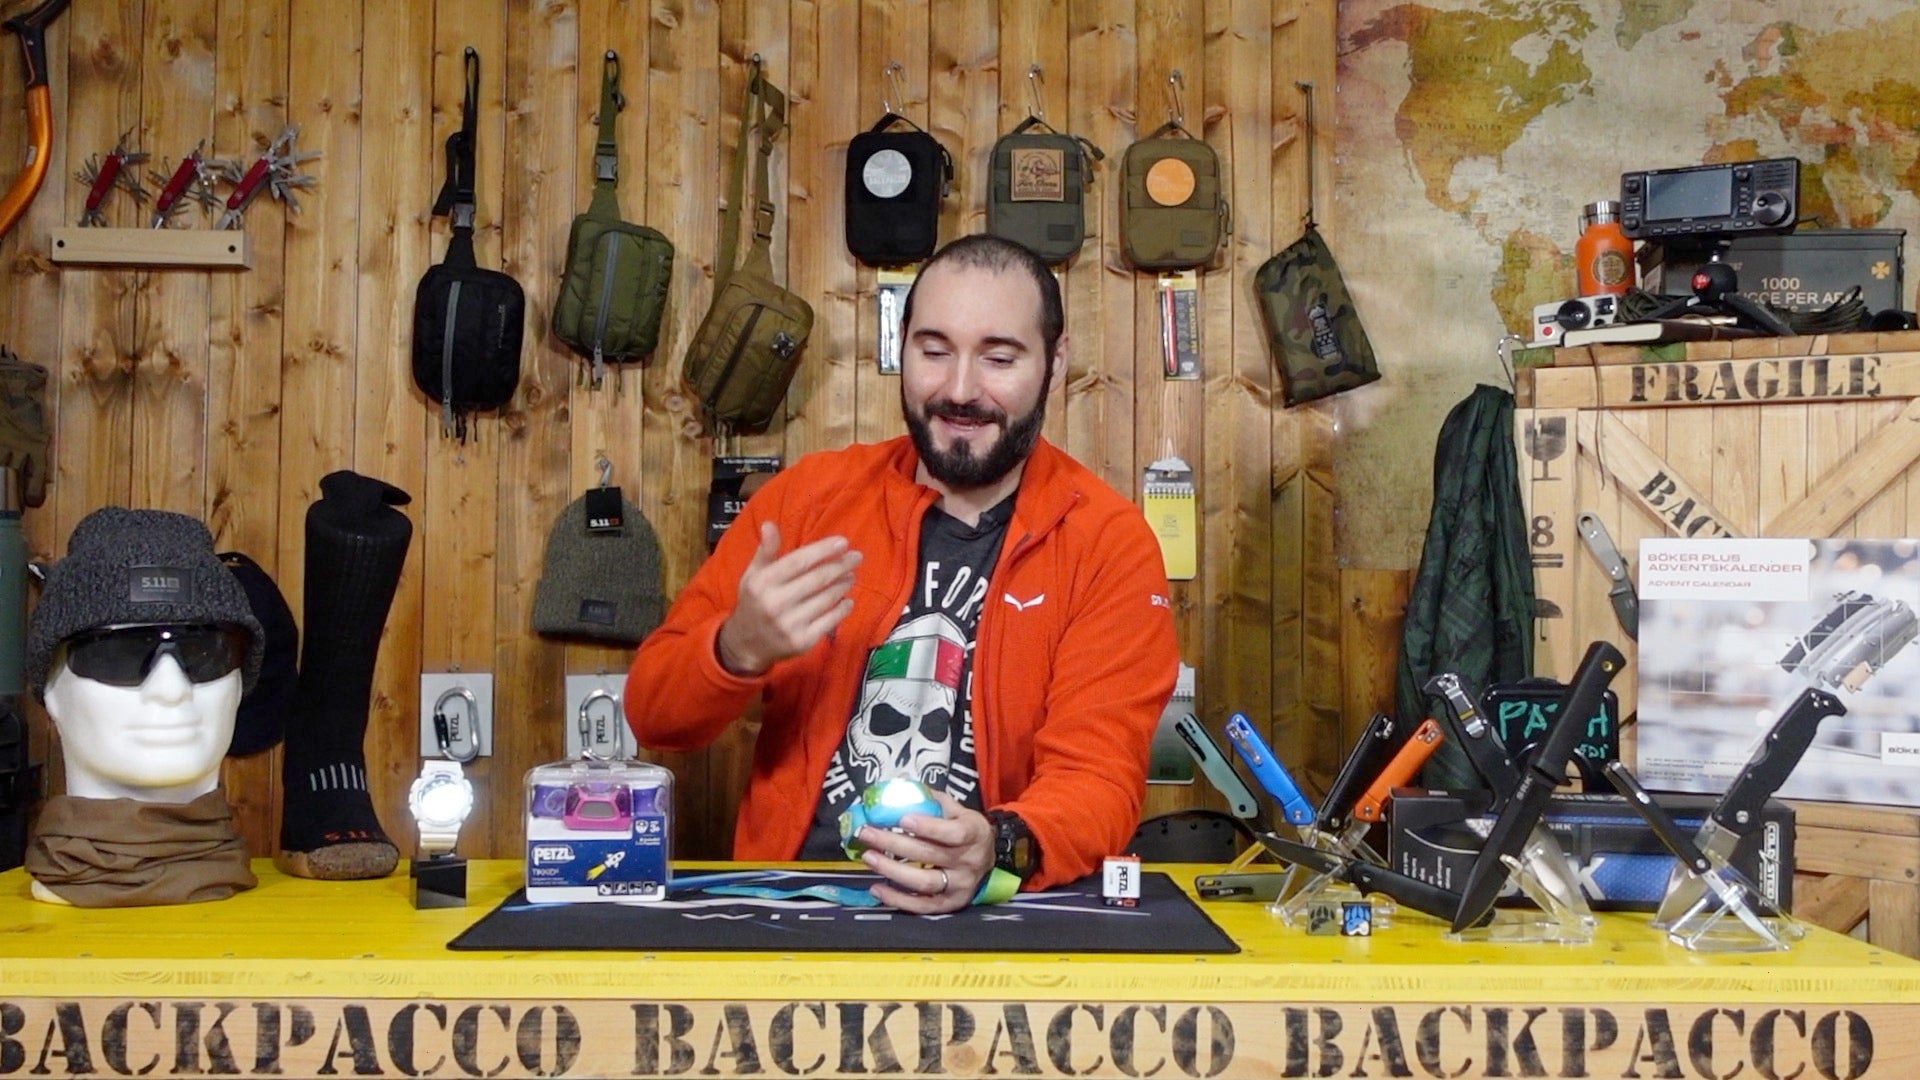 Paolo di backpacco spiega la petzl tikkid